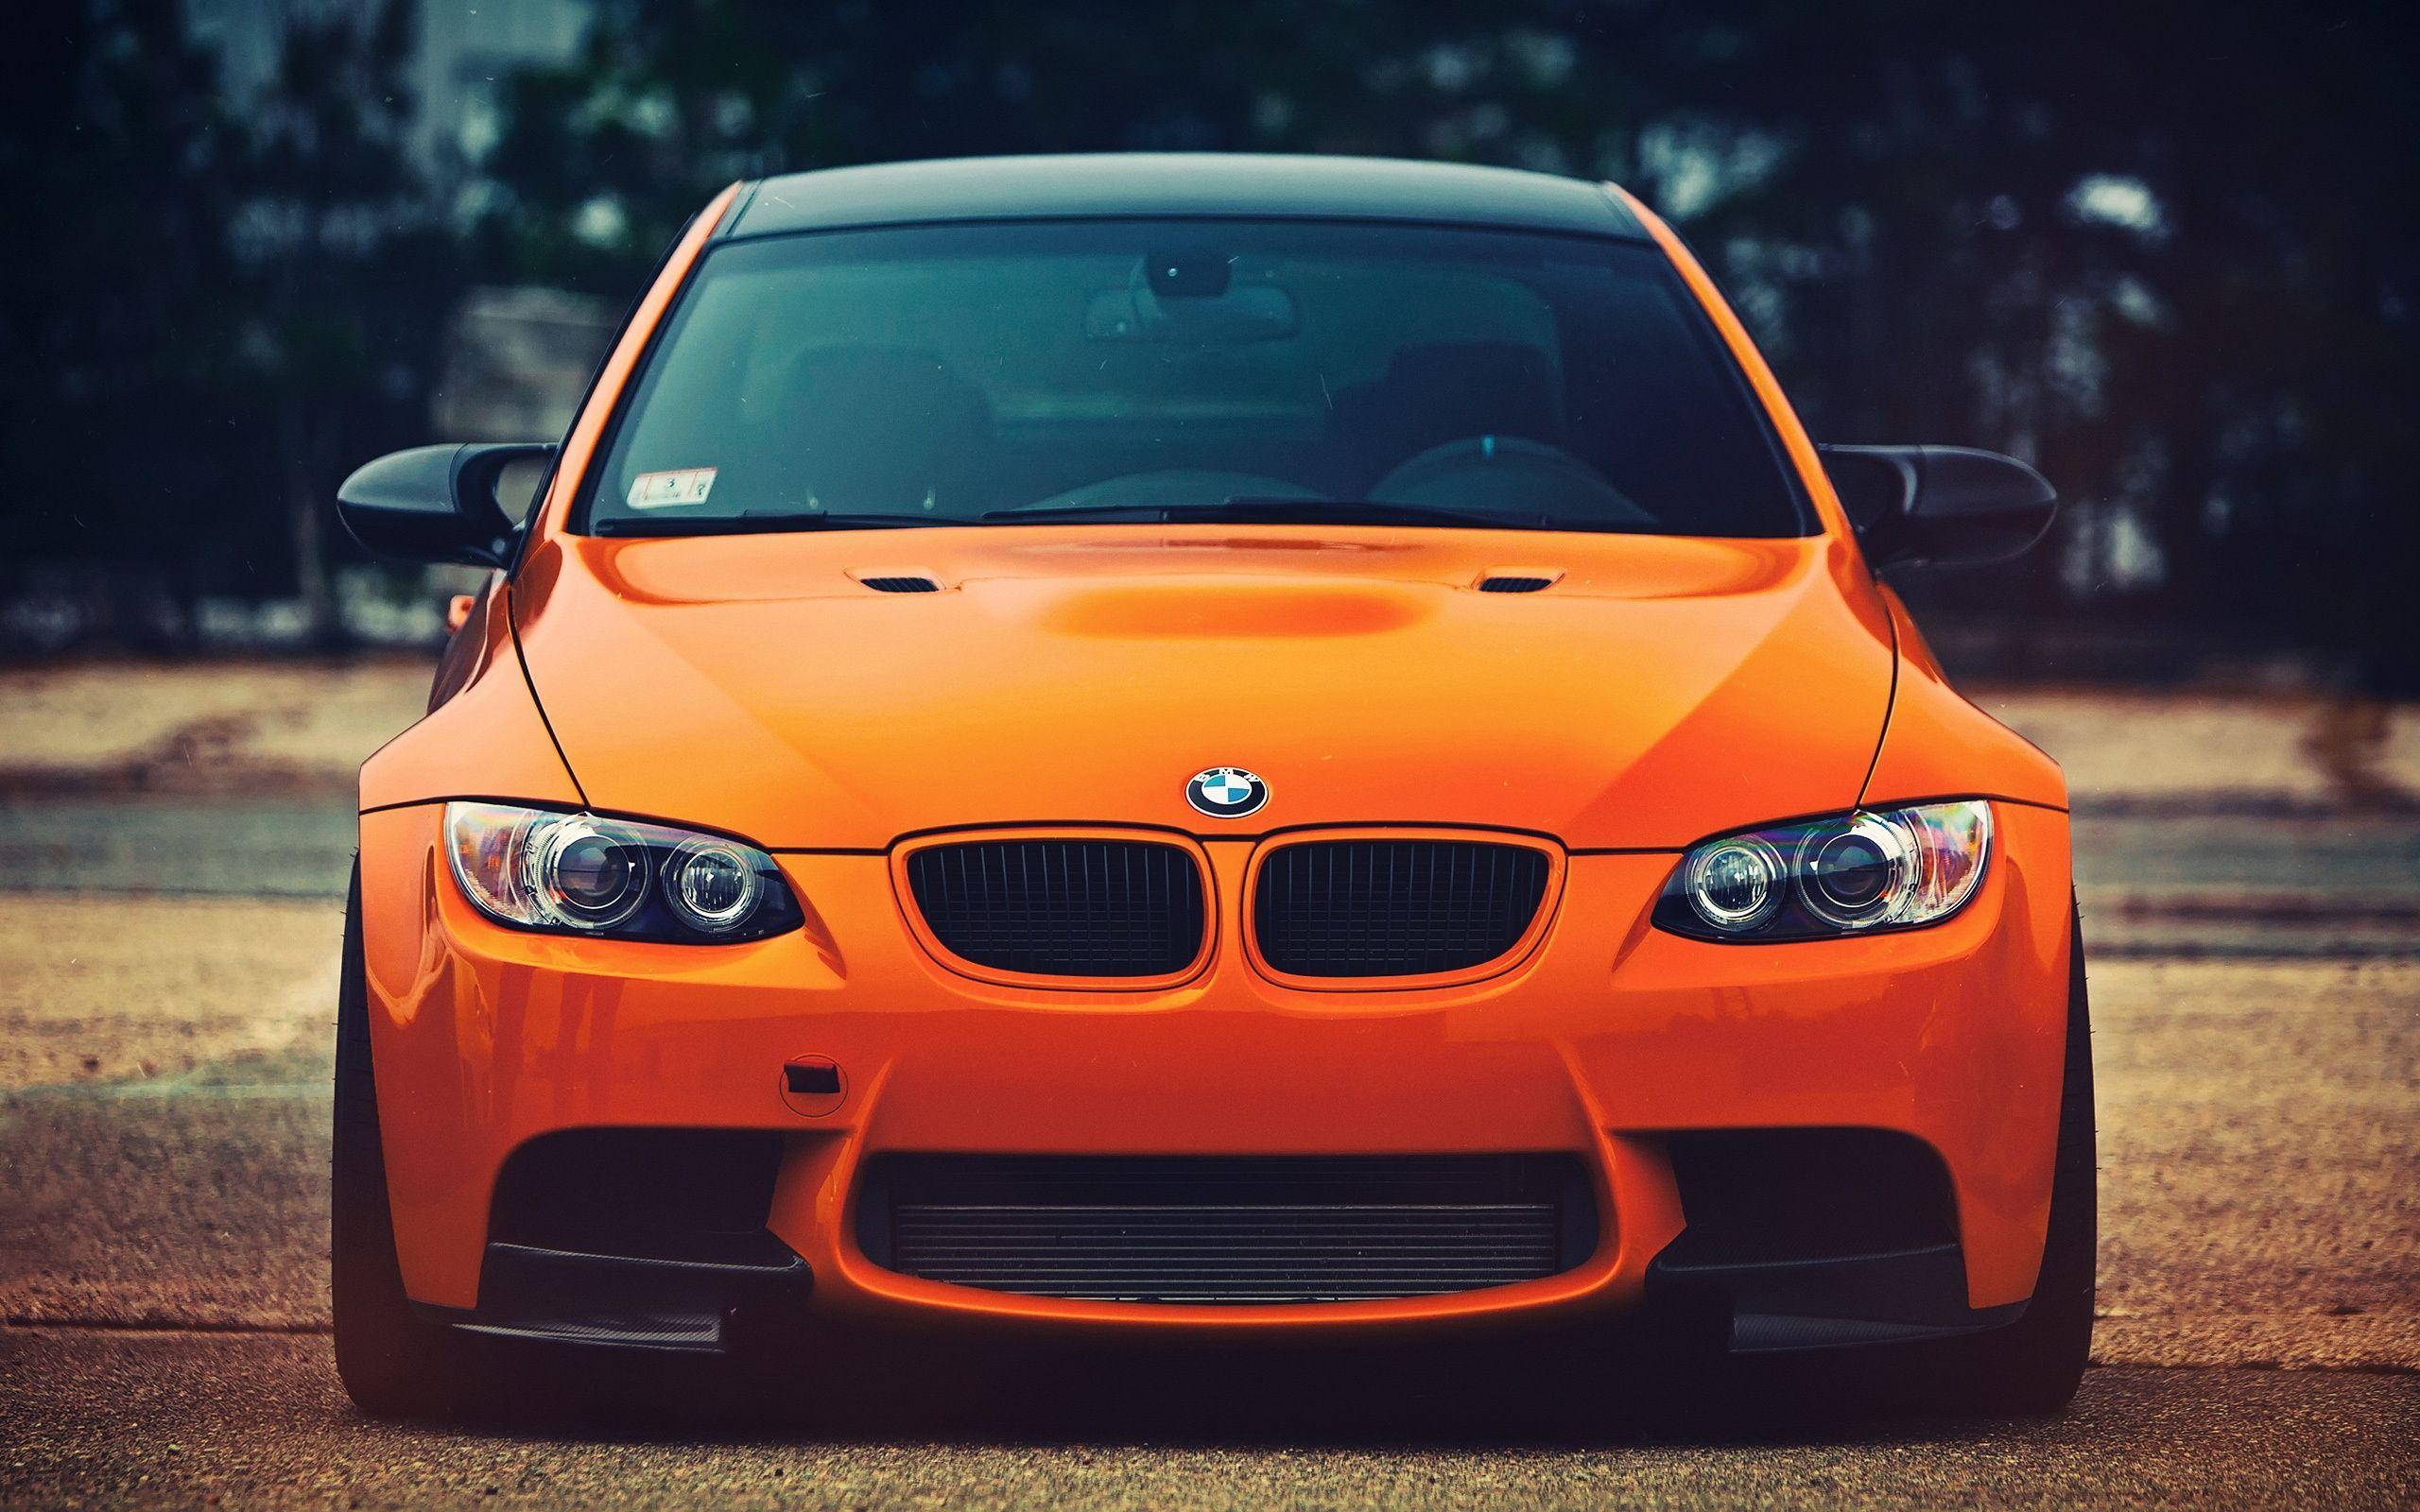 BMW M3 orange car front view Wallpaper. HD Desktop Wallpaper. Bmw m Bmw, Orange car